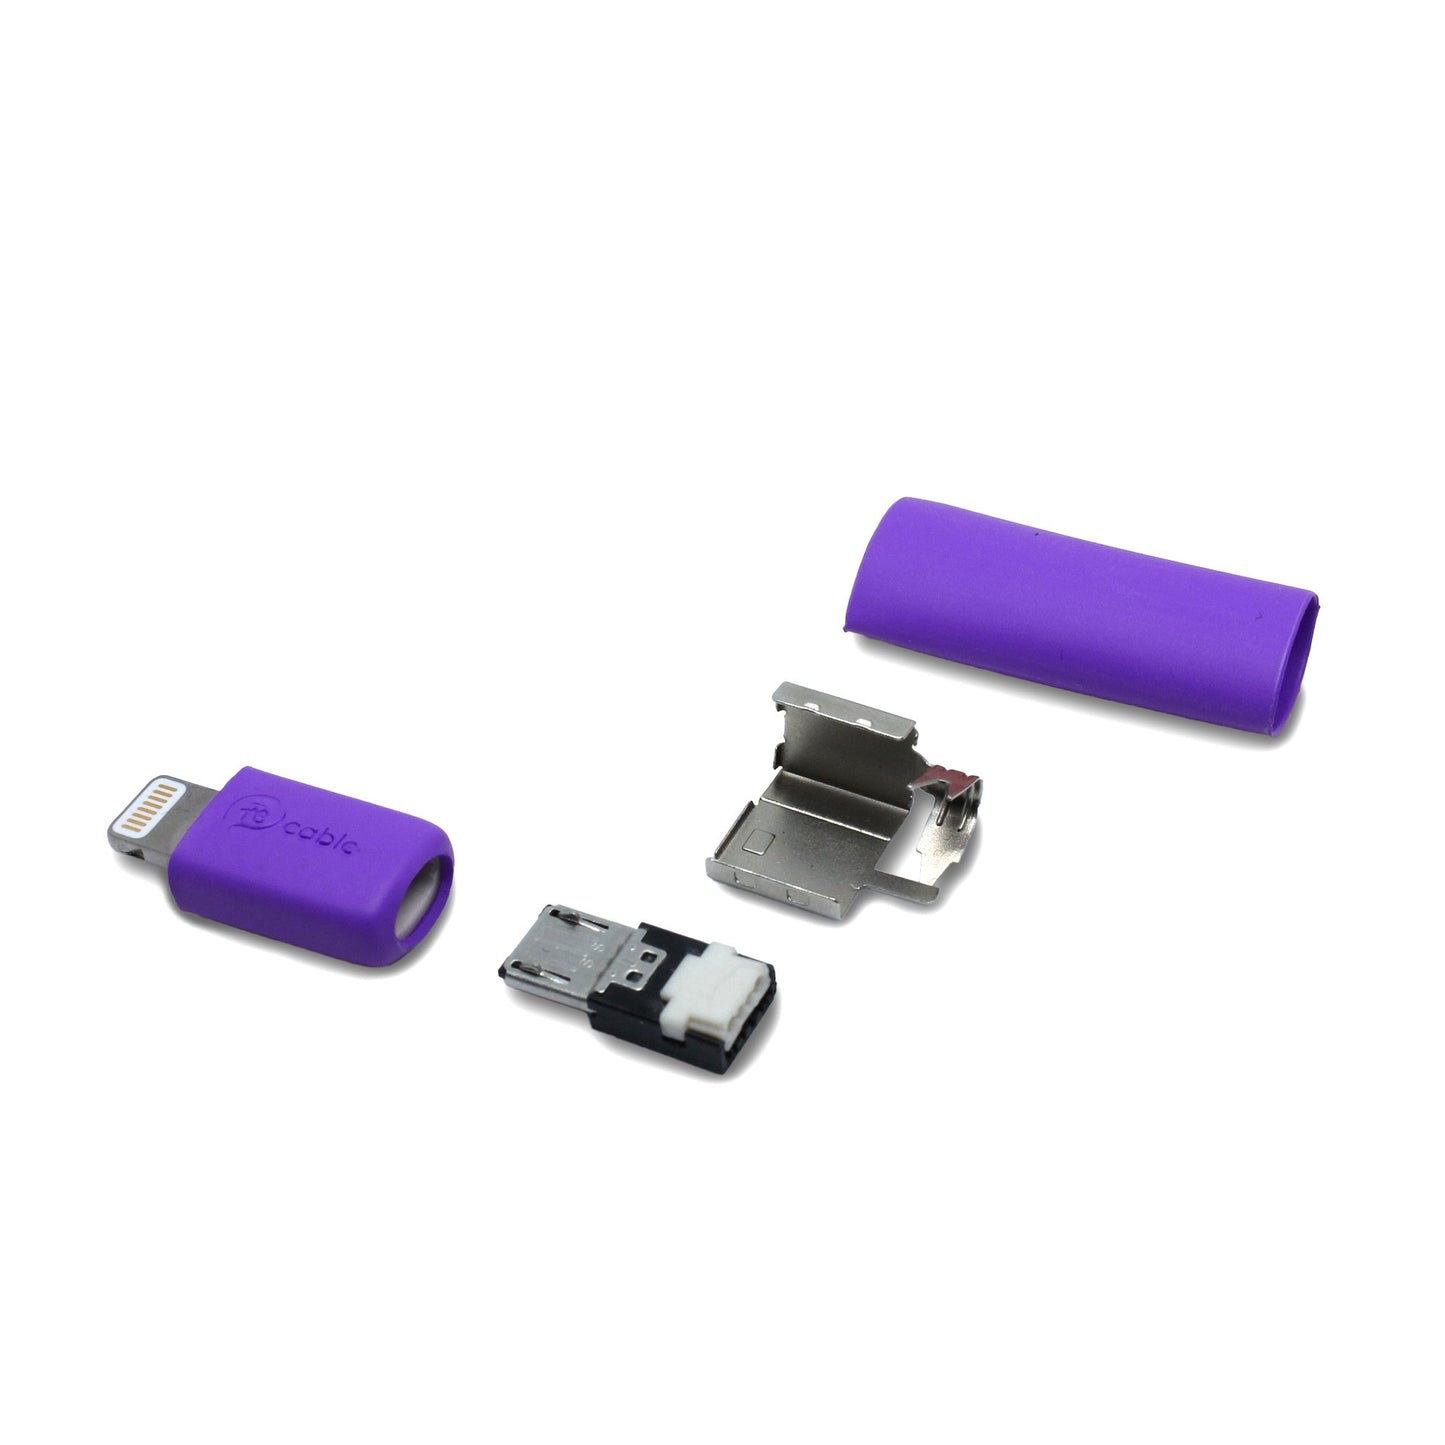 Einzelteile Micro USB Stecker mit Lightning Adapter in lila, mit dem Ersatzteil kann ein iPhone Kabel lötfrei (crimpen) repariert werden